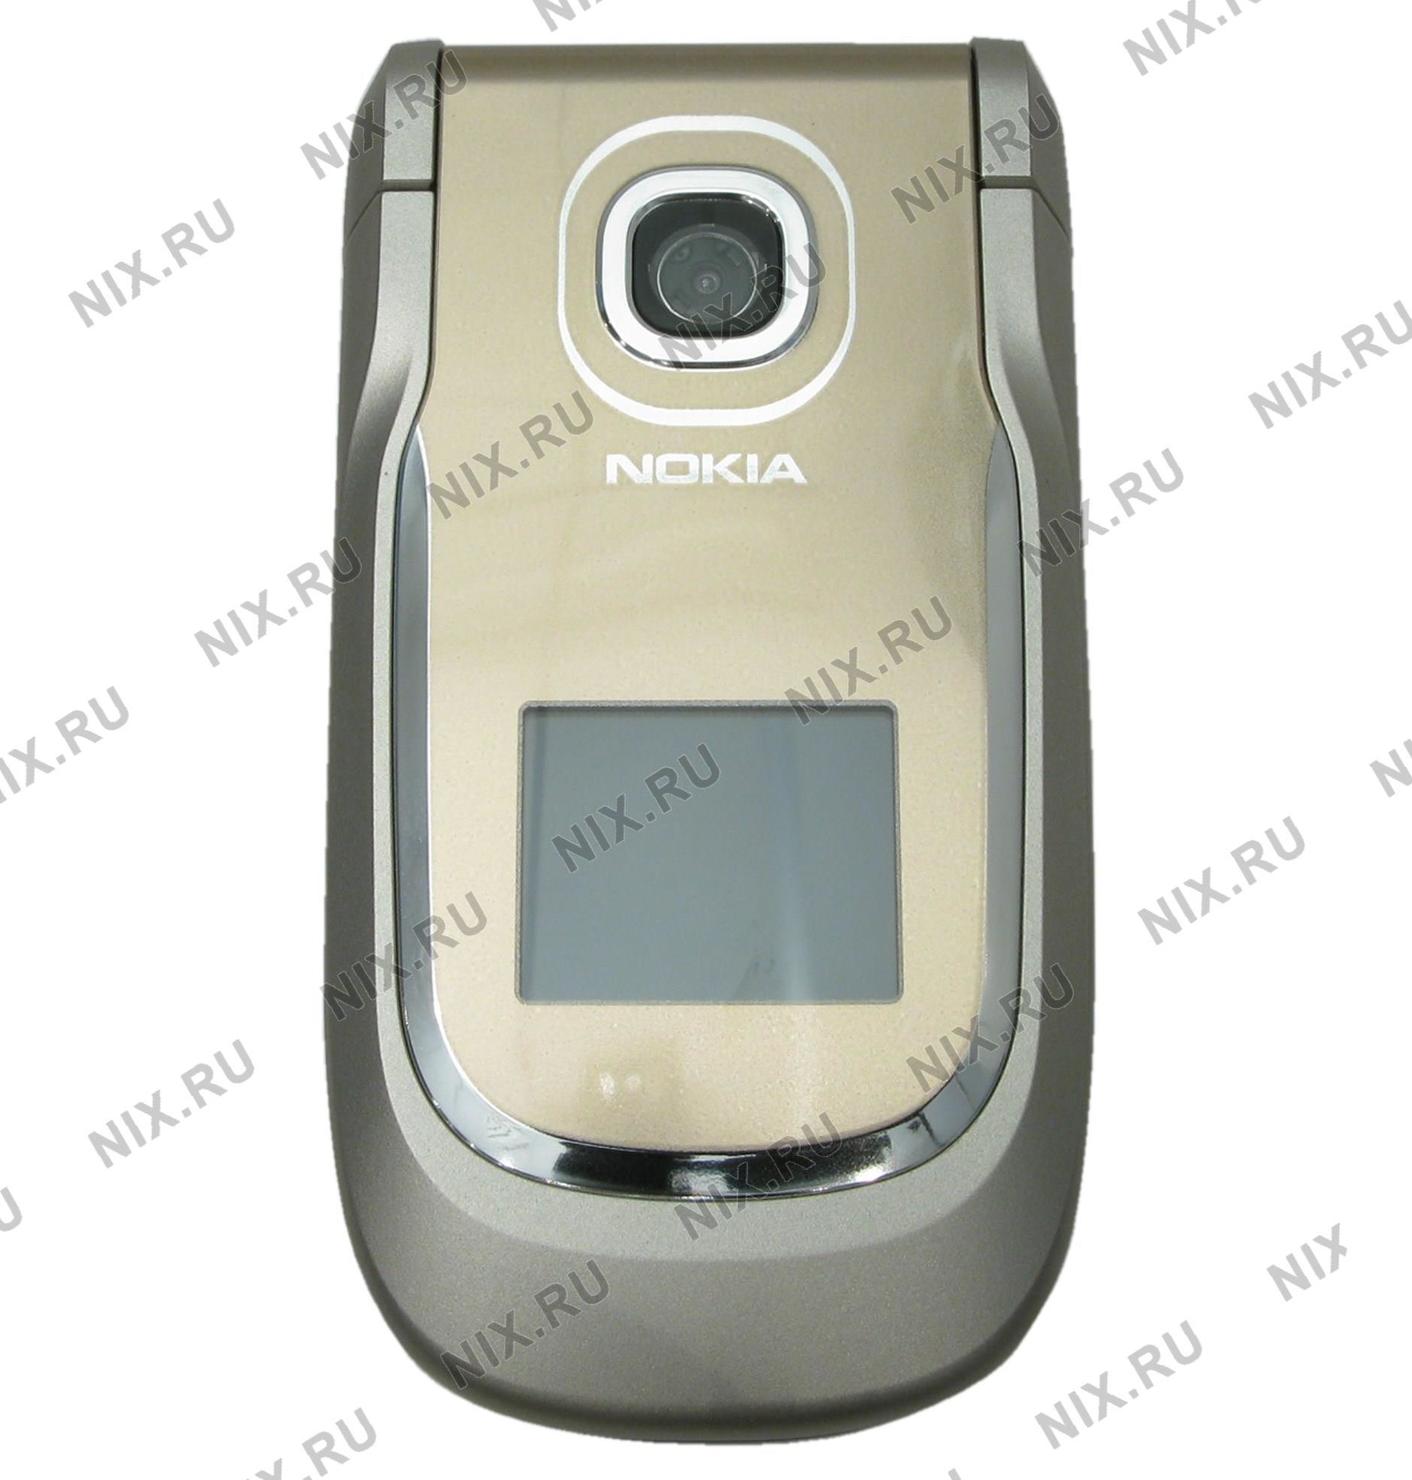 Nokia 2760 RG